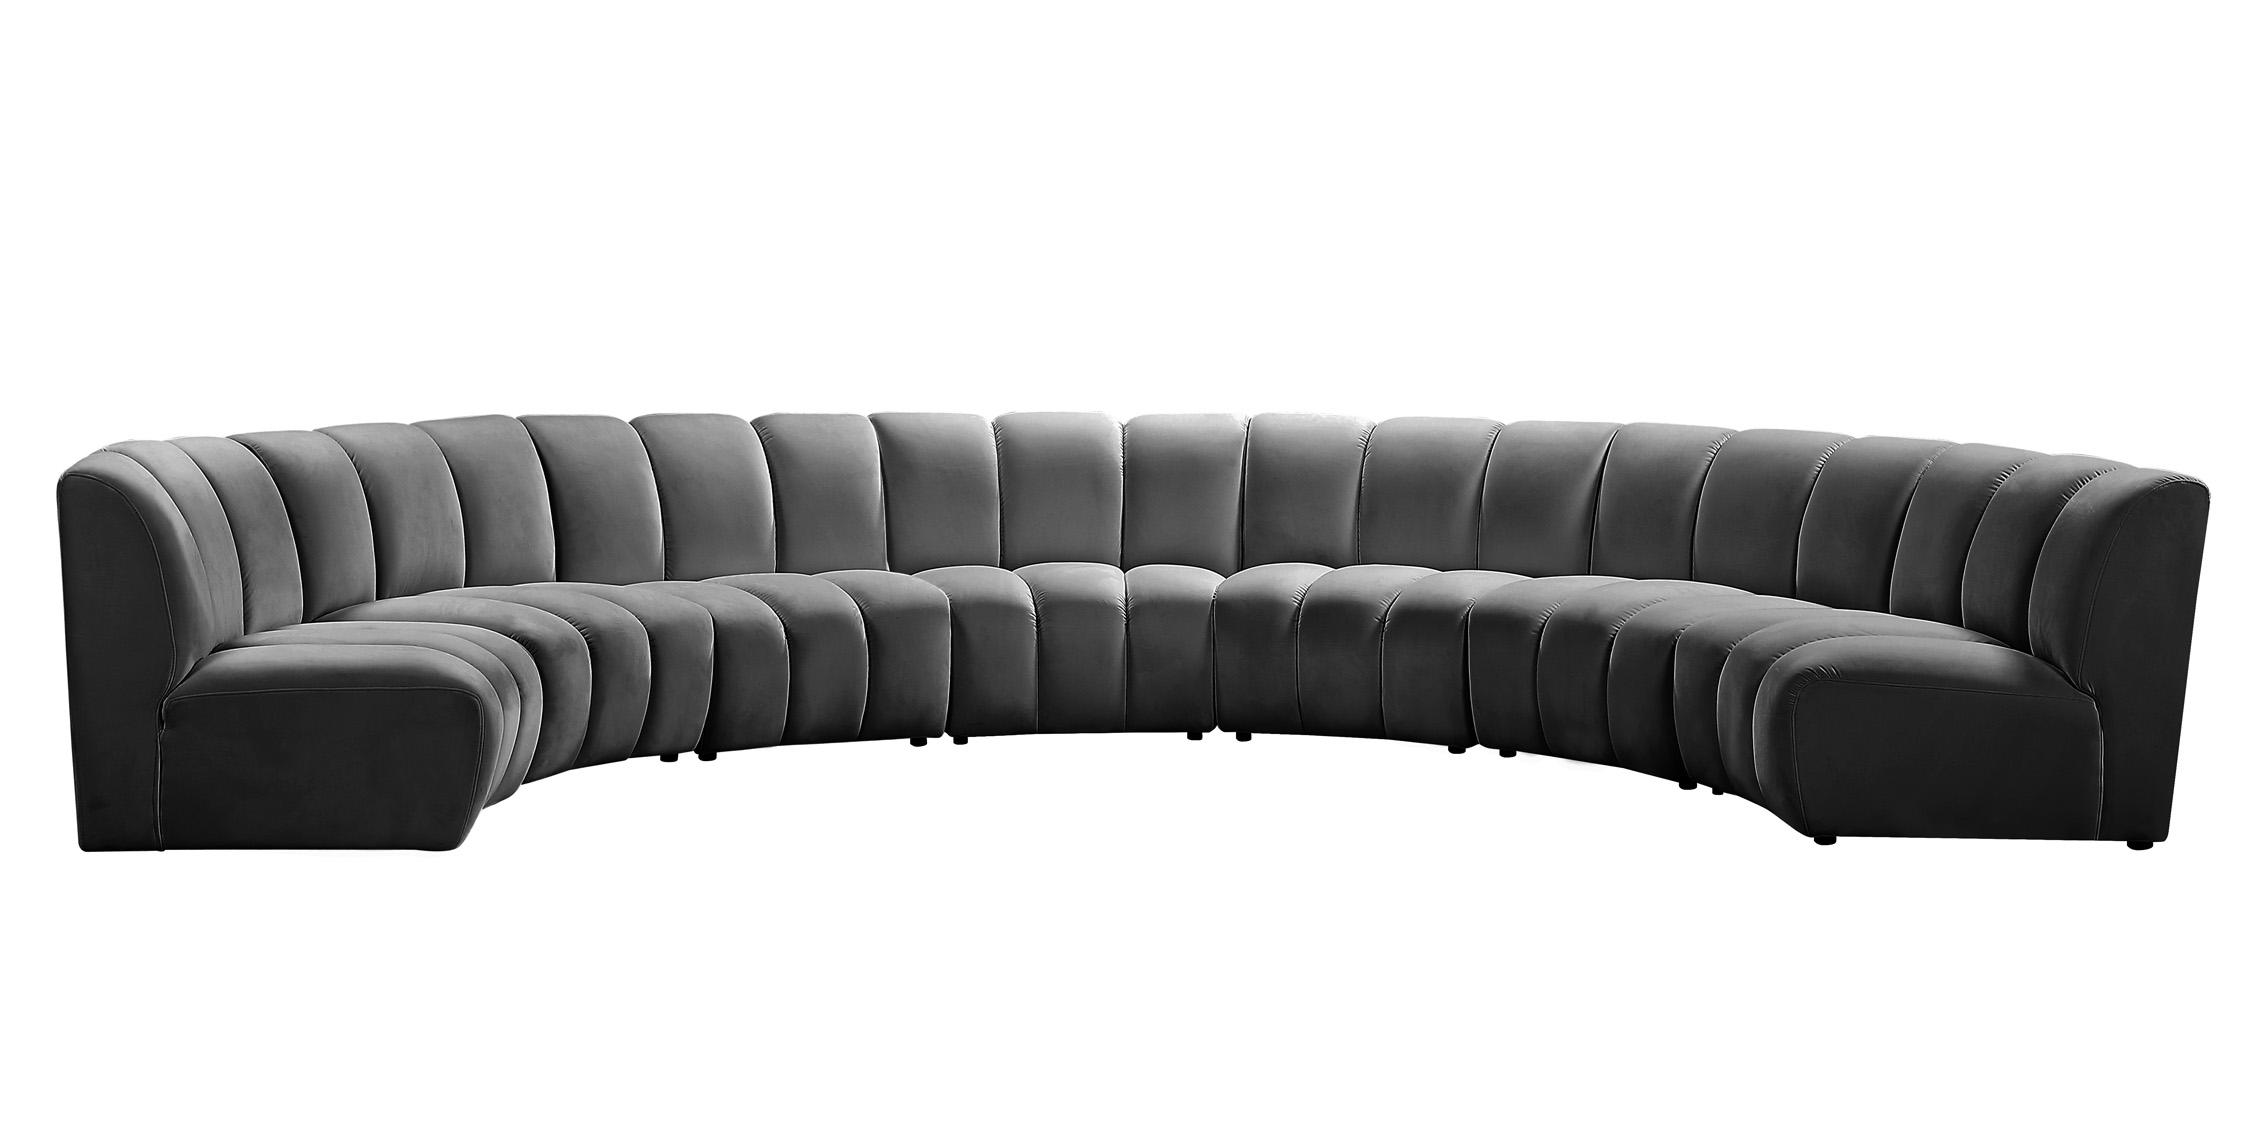 

    
638Grey-7PC Meridian Furniture Modular Sectional Sofa
